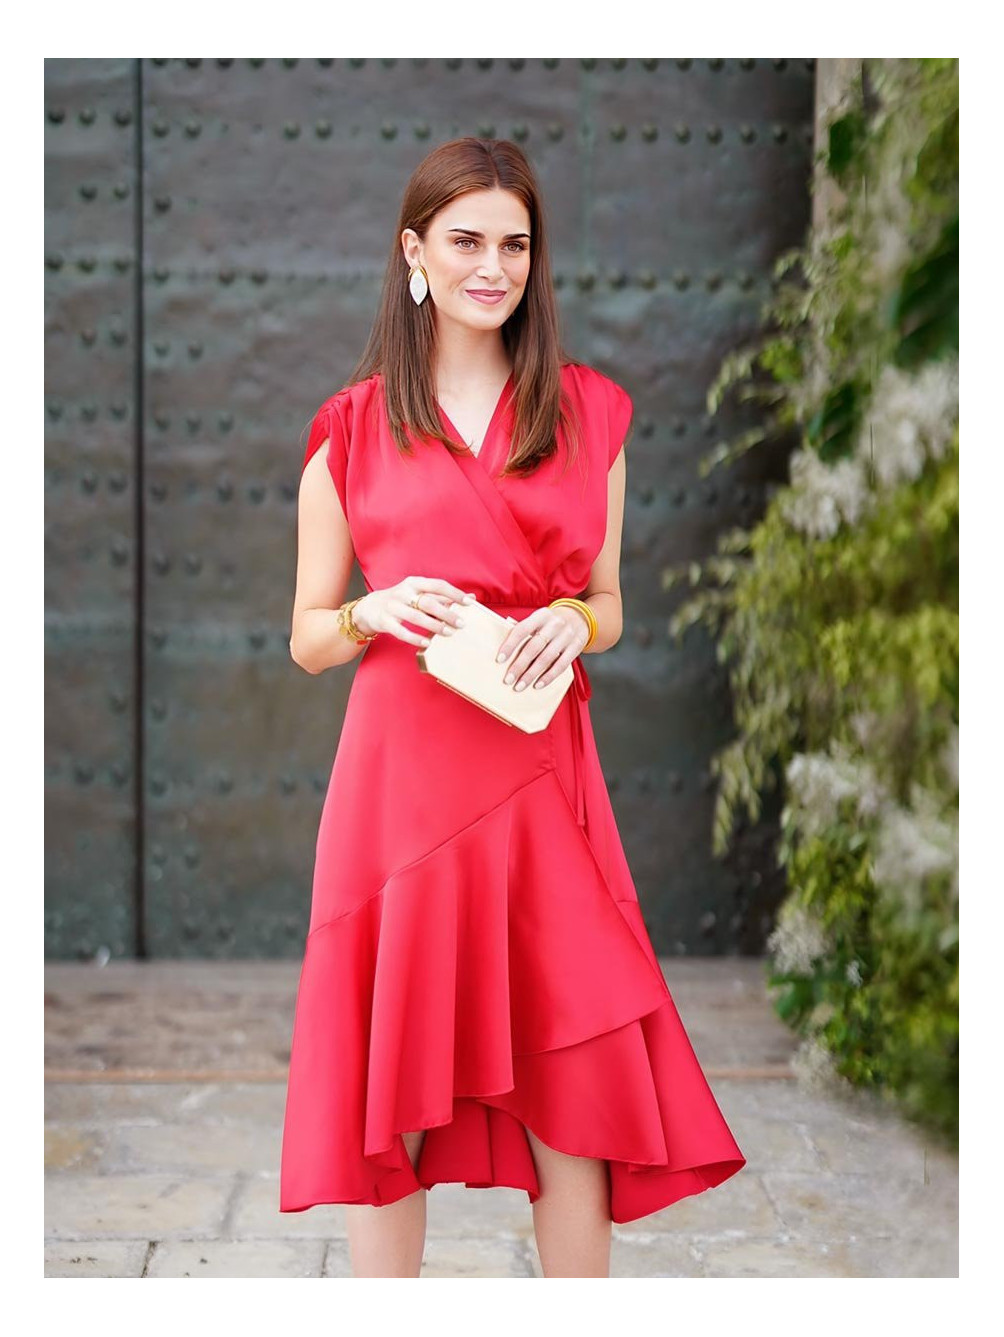 Vestido Milano Rojo, Vestido de Invitada Barato, Vestido Rojo, Mariquita Trasquilá